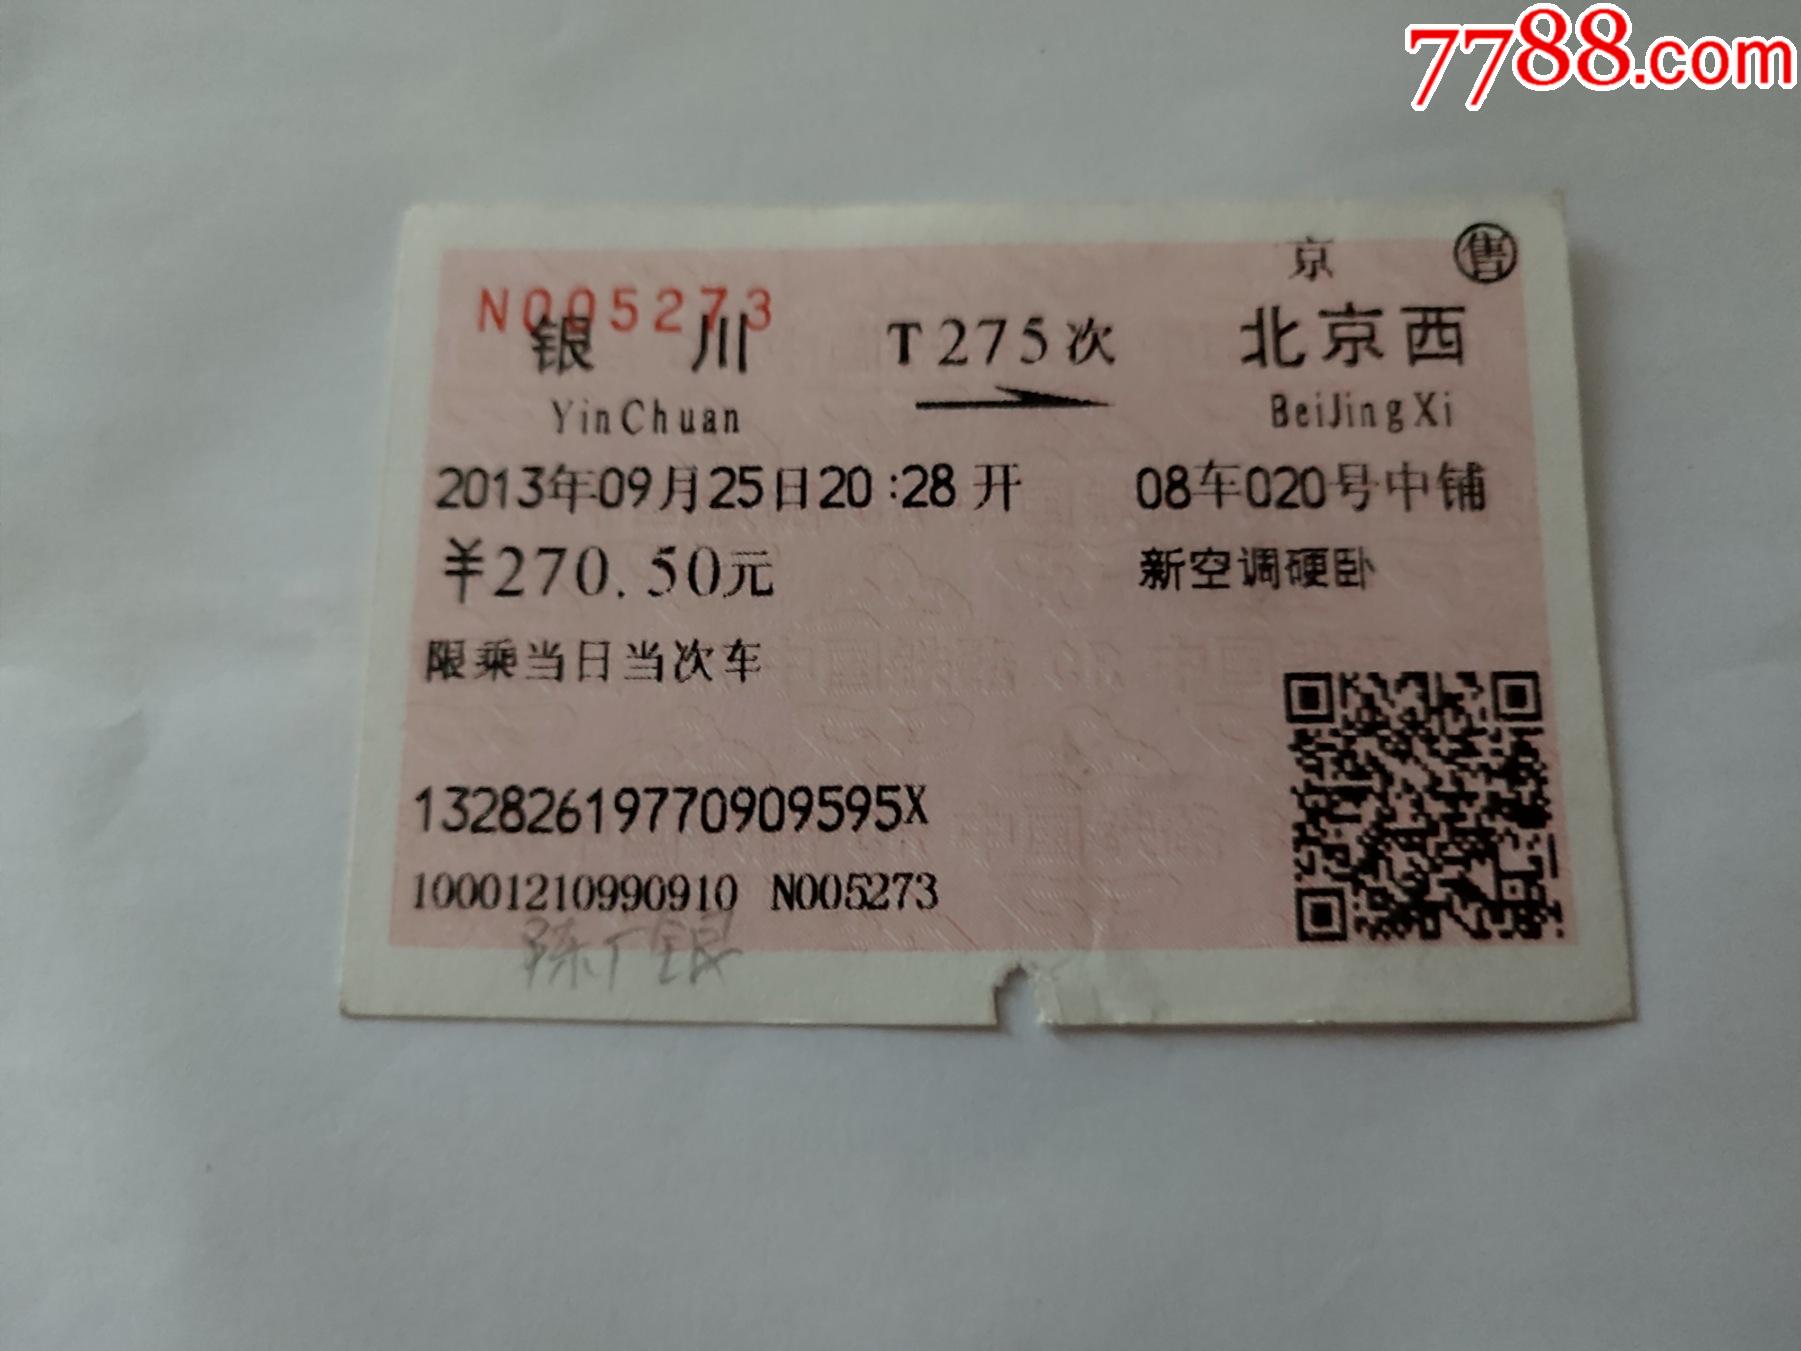 菊剑飞机票—航空运输电子客票行程单4连张及咸阳、成都、广州、银川登机牌5张-飞机/航空票-7788收藏